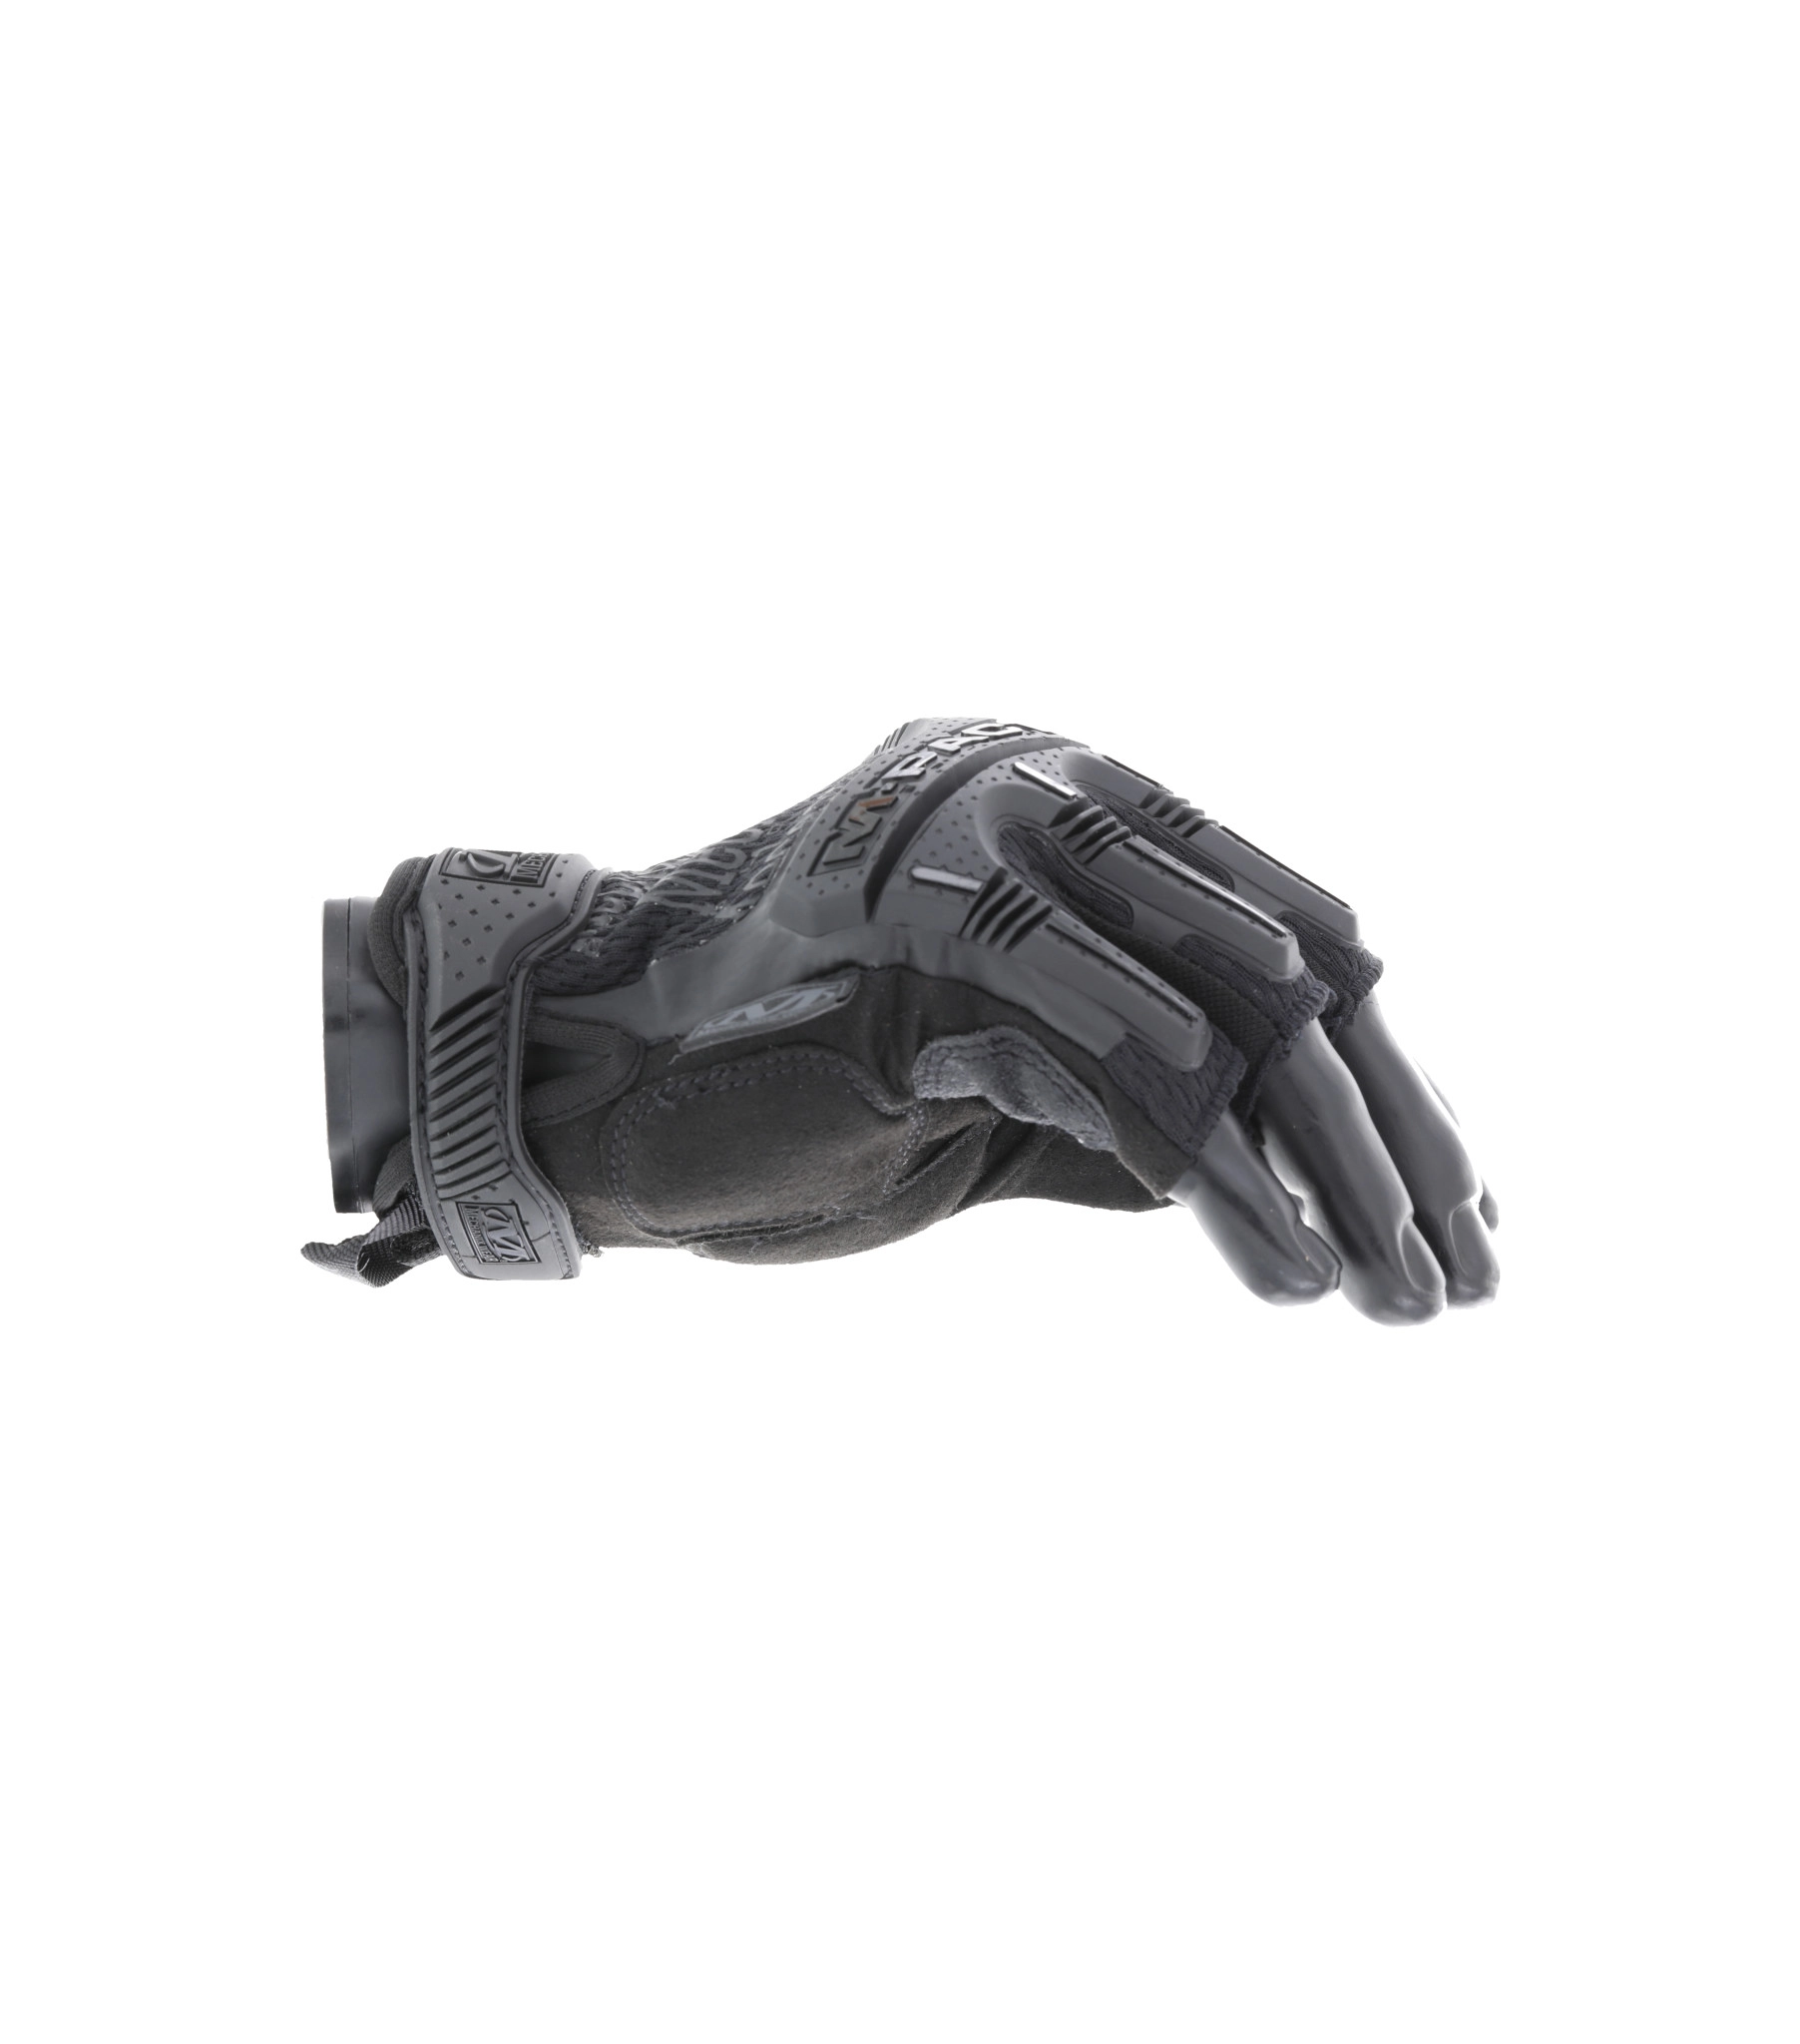 Mechanix M-Pact Fingerless hansikkaat - Covert